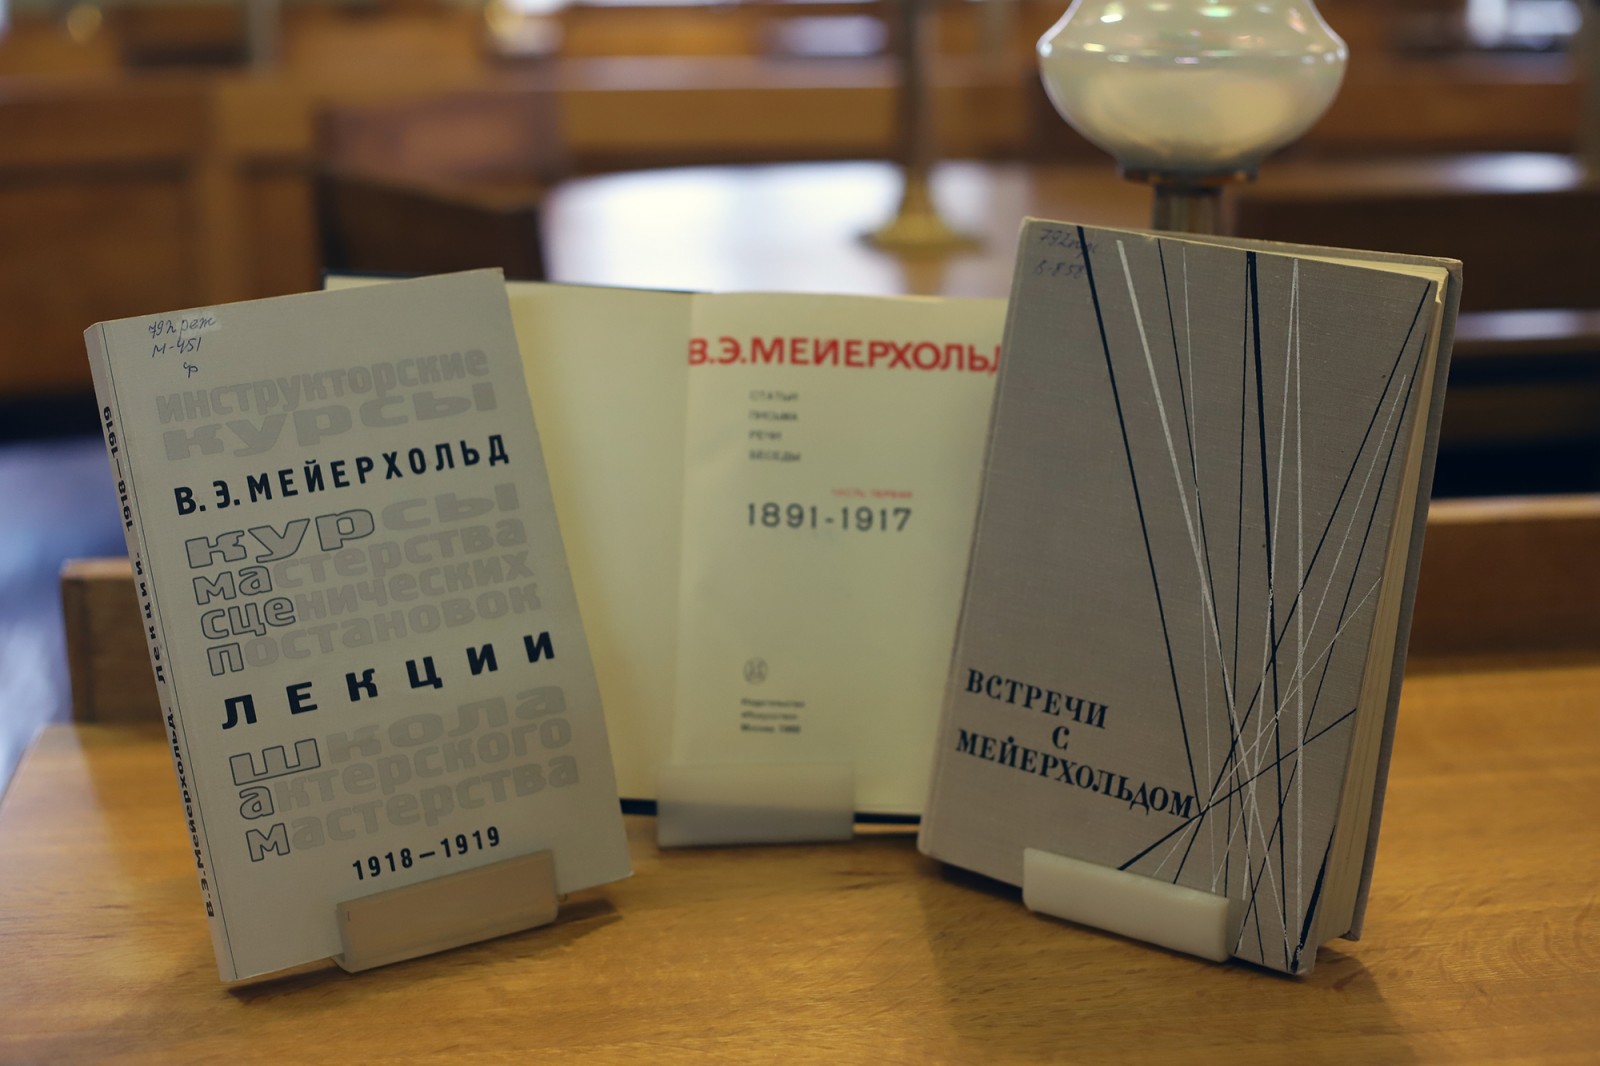 Выставка к 145-летию со дня рождения Всеволода Мейерхольда в библиотеке ГИТИСа